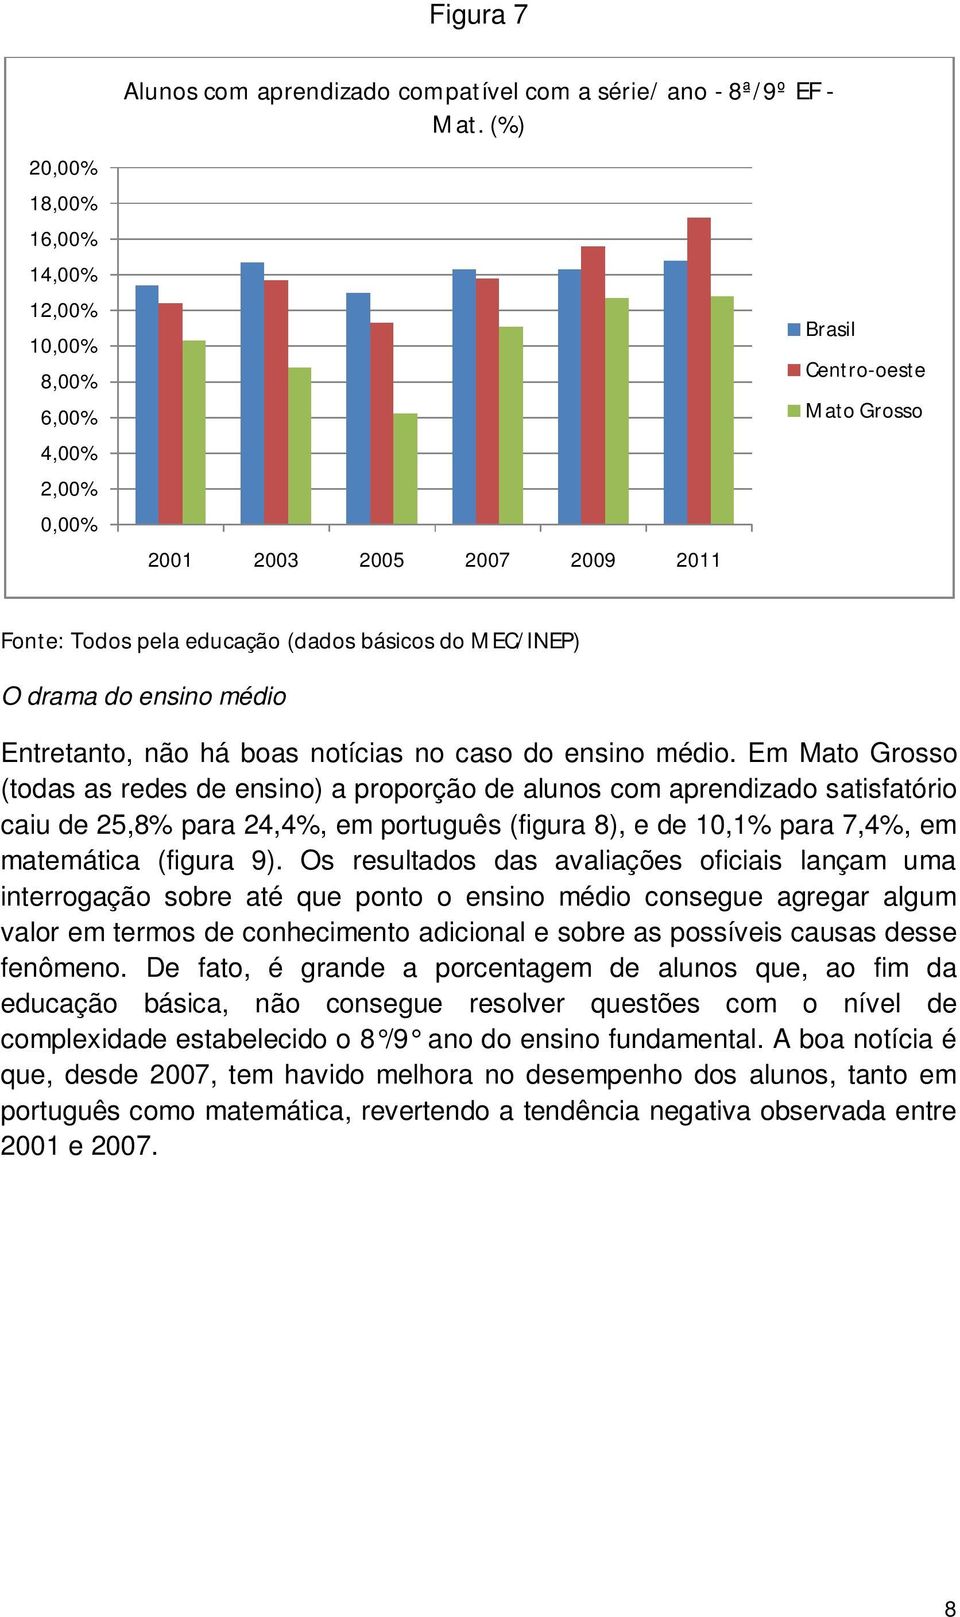 médio. Em Mato Grosso (todas as redes de ensino) a proporção de alunos com aprendizado satisfatório caiu de 25,8% para 24,4%, em português (figura 8), e de 10,1% para 7,4%, em matemática (figura 9).